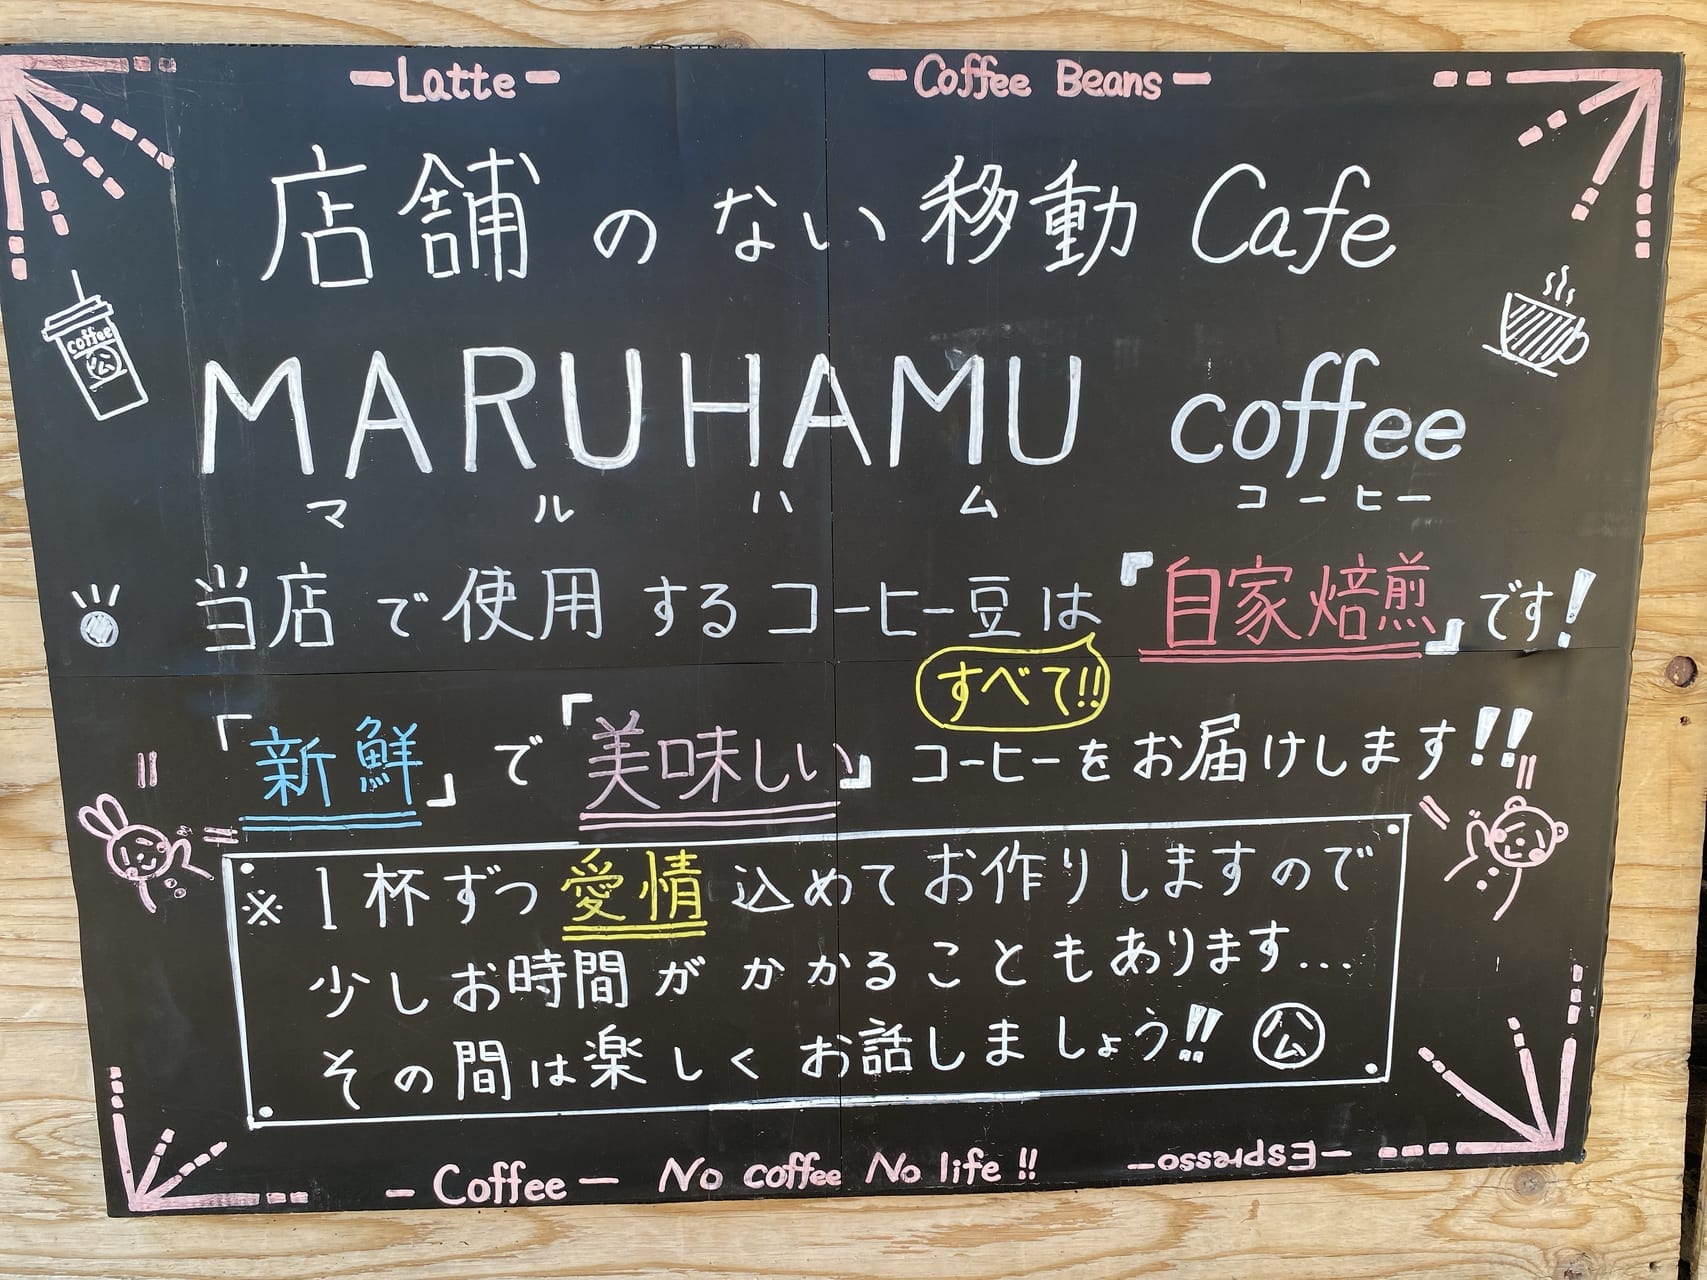 宮崎キッチンカー 店舗のない移動カフェ マルハムコーヒー3